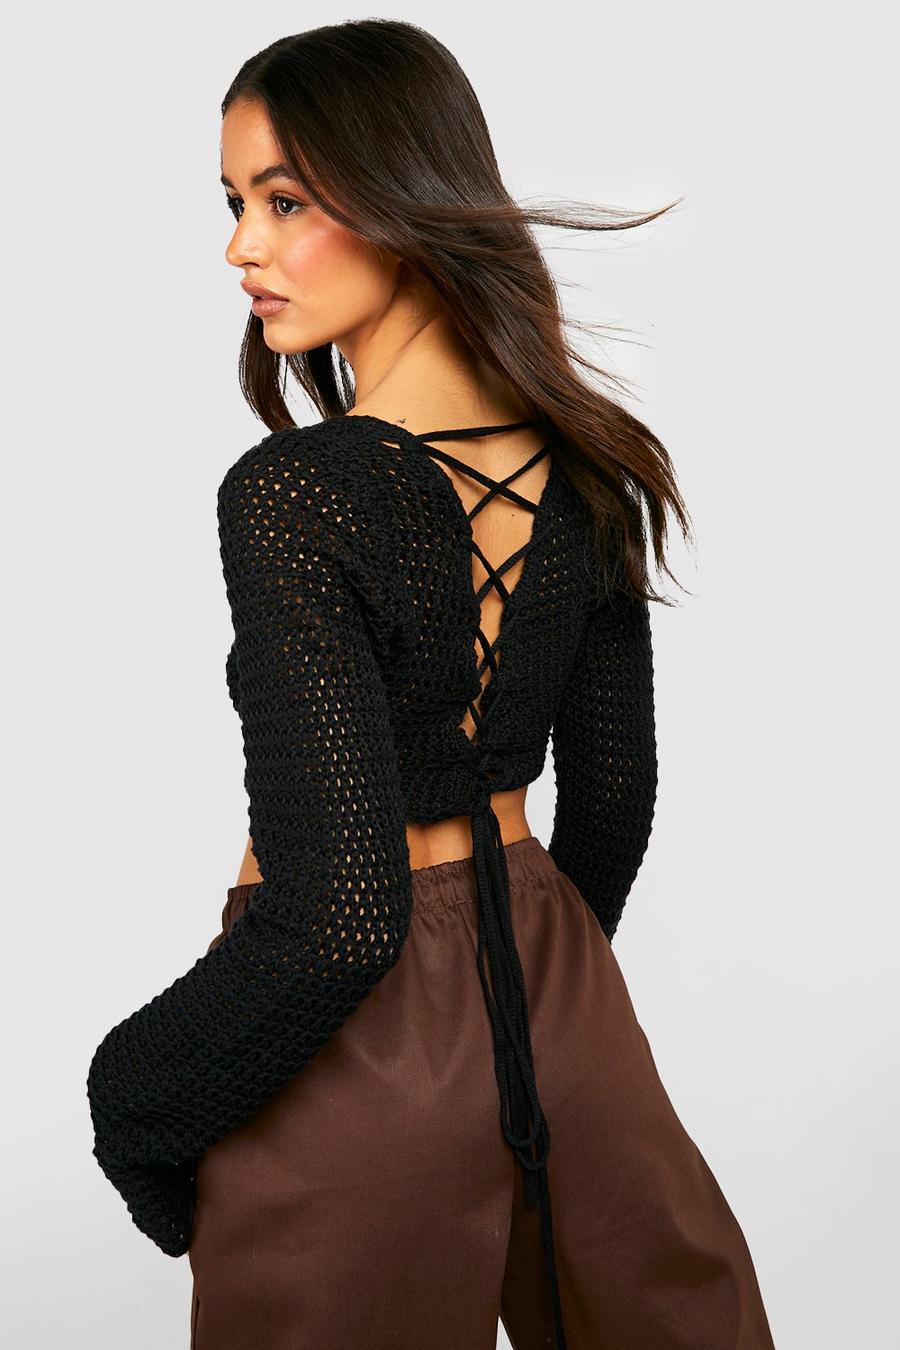 Black Lace Back Corset Crochet Top